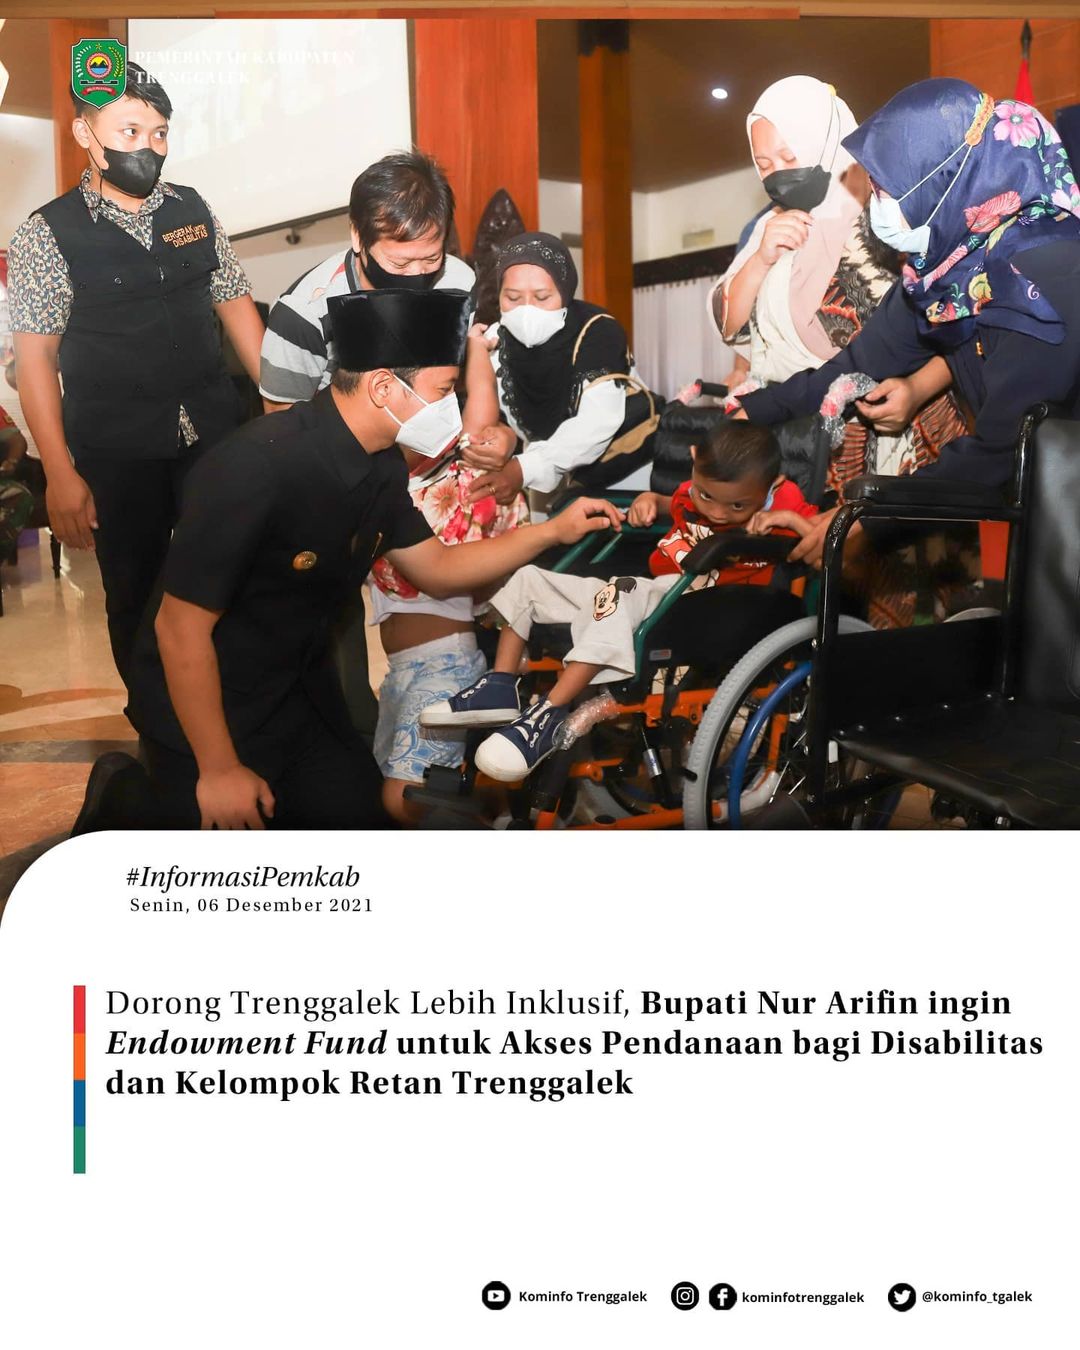 Dorong Trenggalek Lebih Inklusif, Bupati Nur Arifin ingin Endowment Fund untuk Akses Pendanaan bagi Disabilitas dan Kelompok Retan Trenggalek